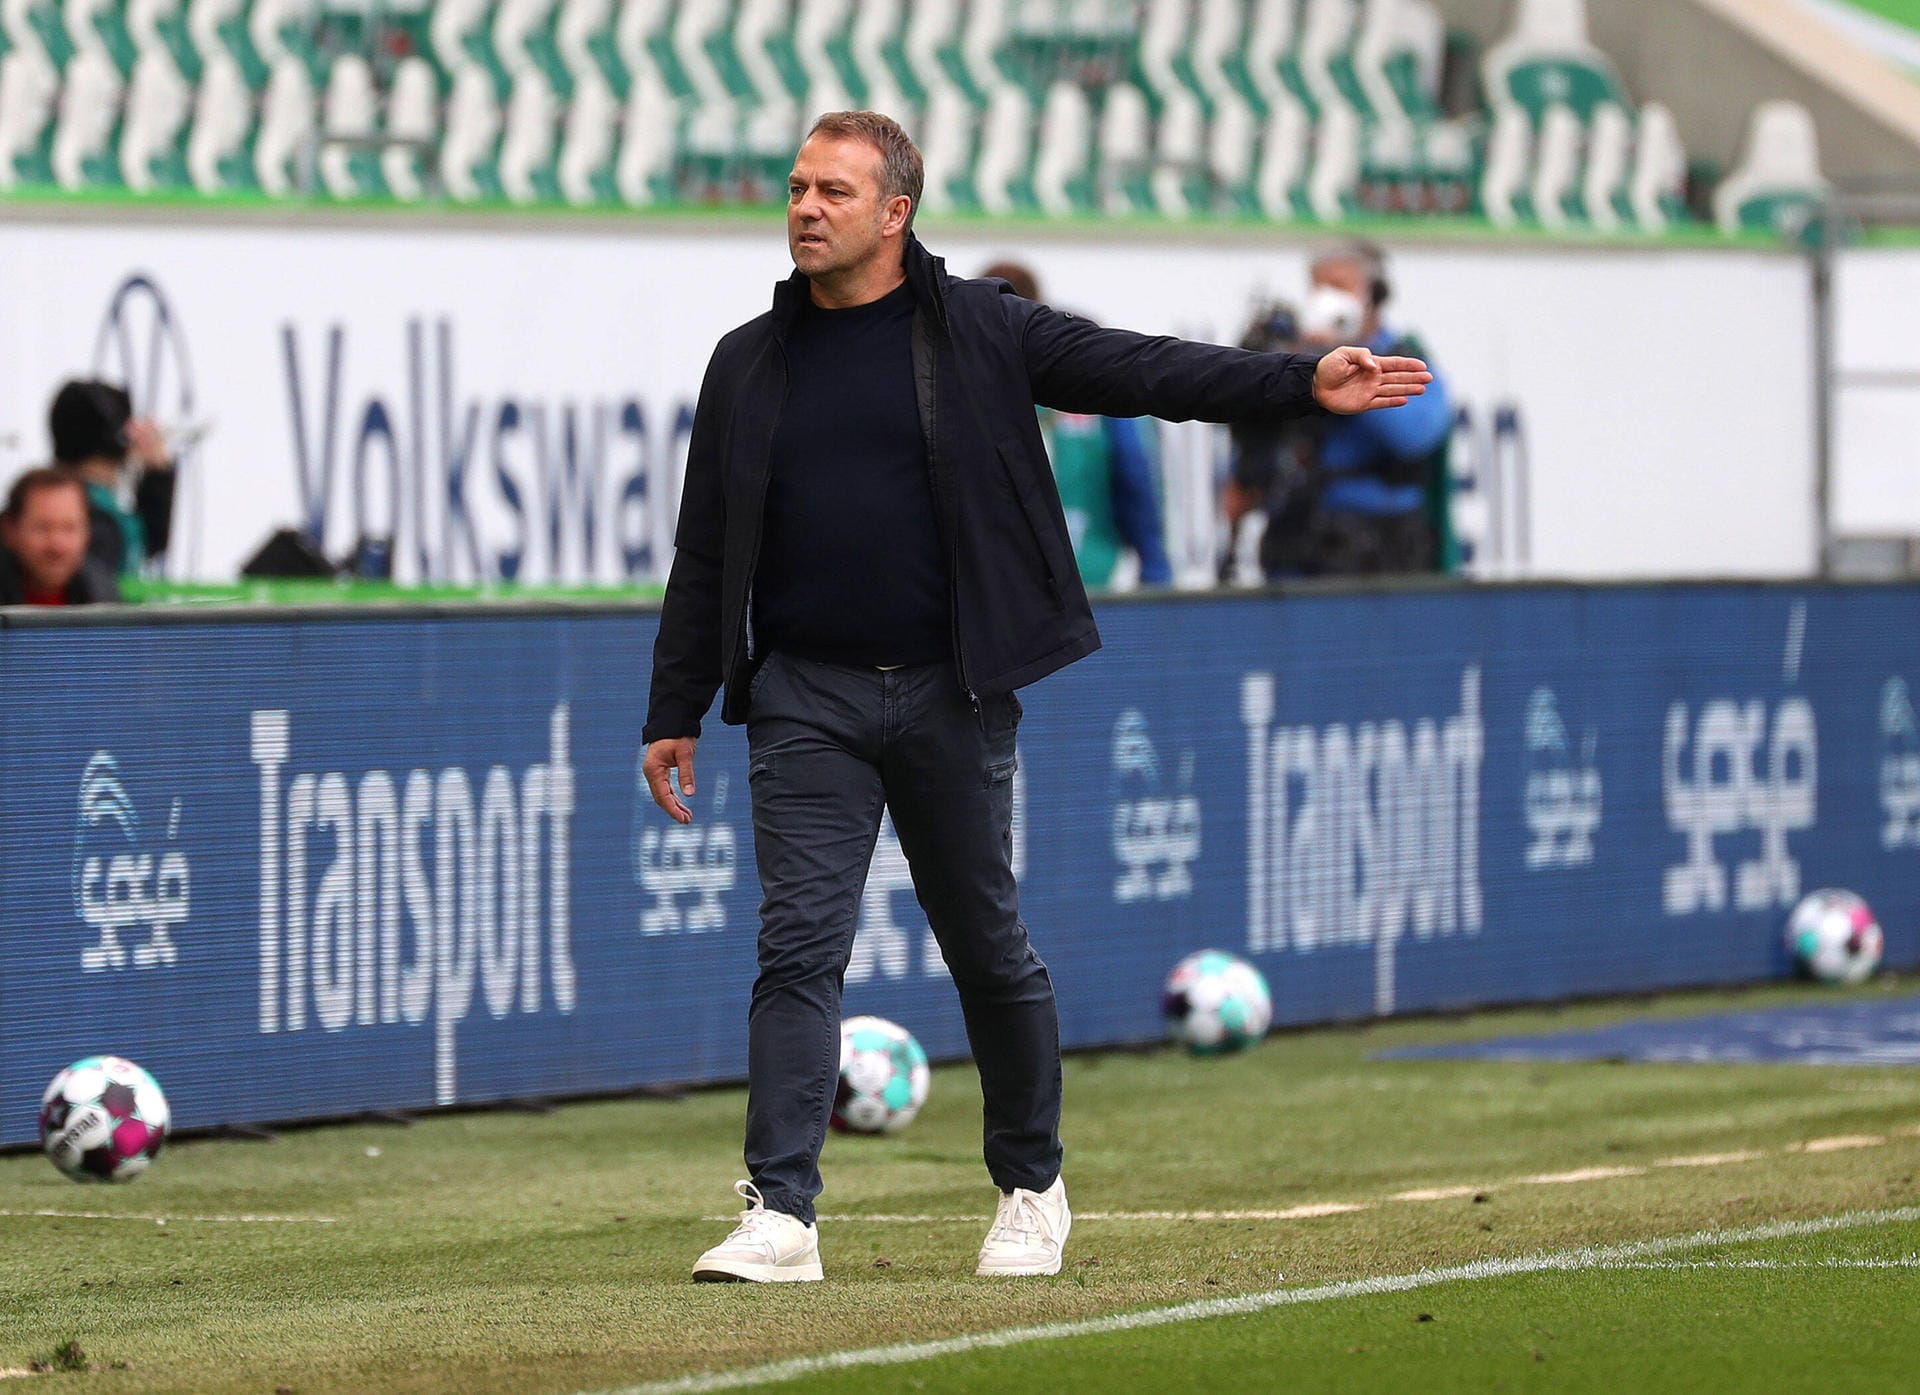 Lange hatte es sich angekündigt, jetzt ist es raus: Hansi Flick will den FC Bayern zum Saisonende verlassen. Das verkündete er nach dem 3:2-Sieg im Spitzenspiel gegen Wolfsburg. Die Mannschaft habe er bereits über seine Entscheidung informiert. Damit stellt sich die Frage: Wer könnte den Erfolgstrainer in München beerben? t-online nennt die Kandidaten.